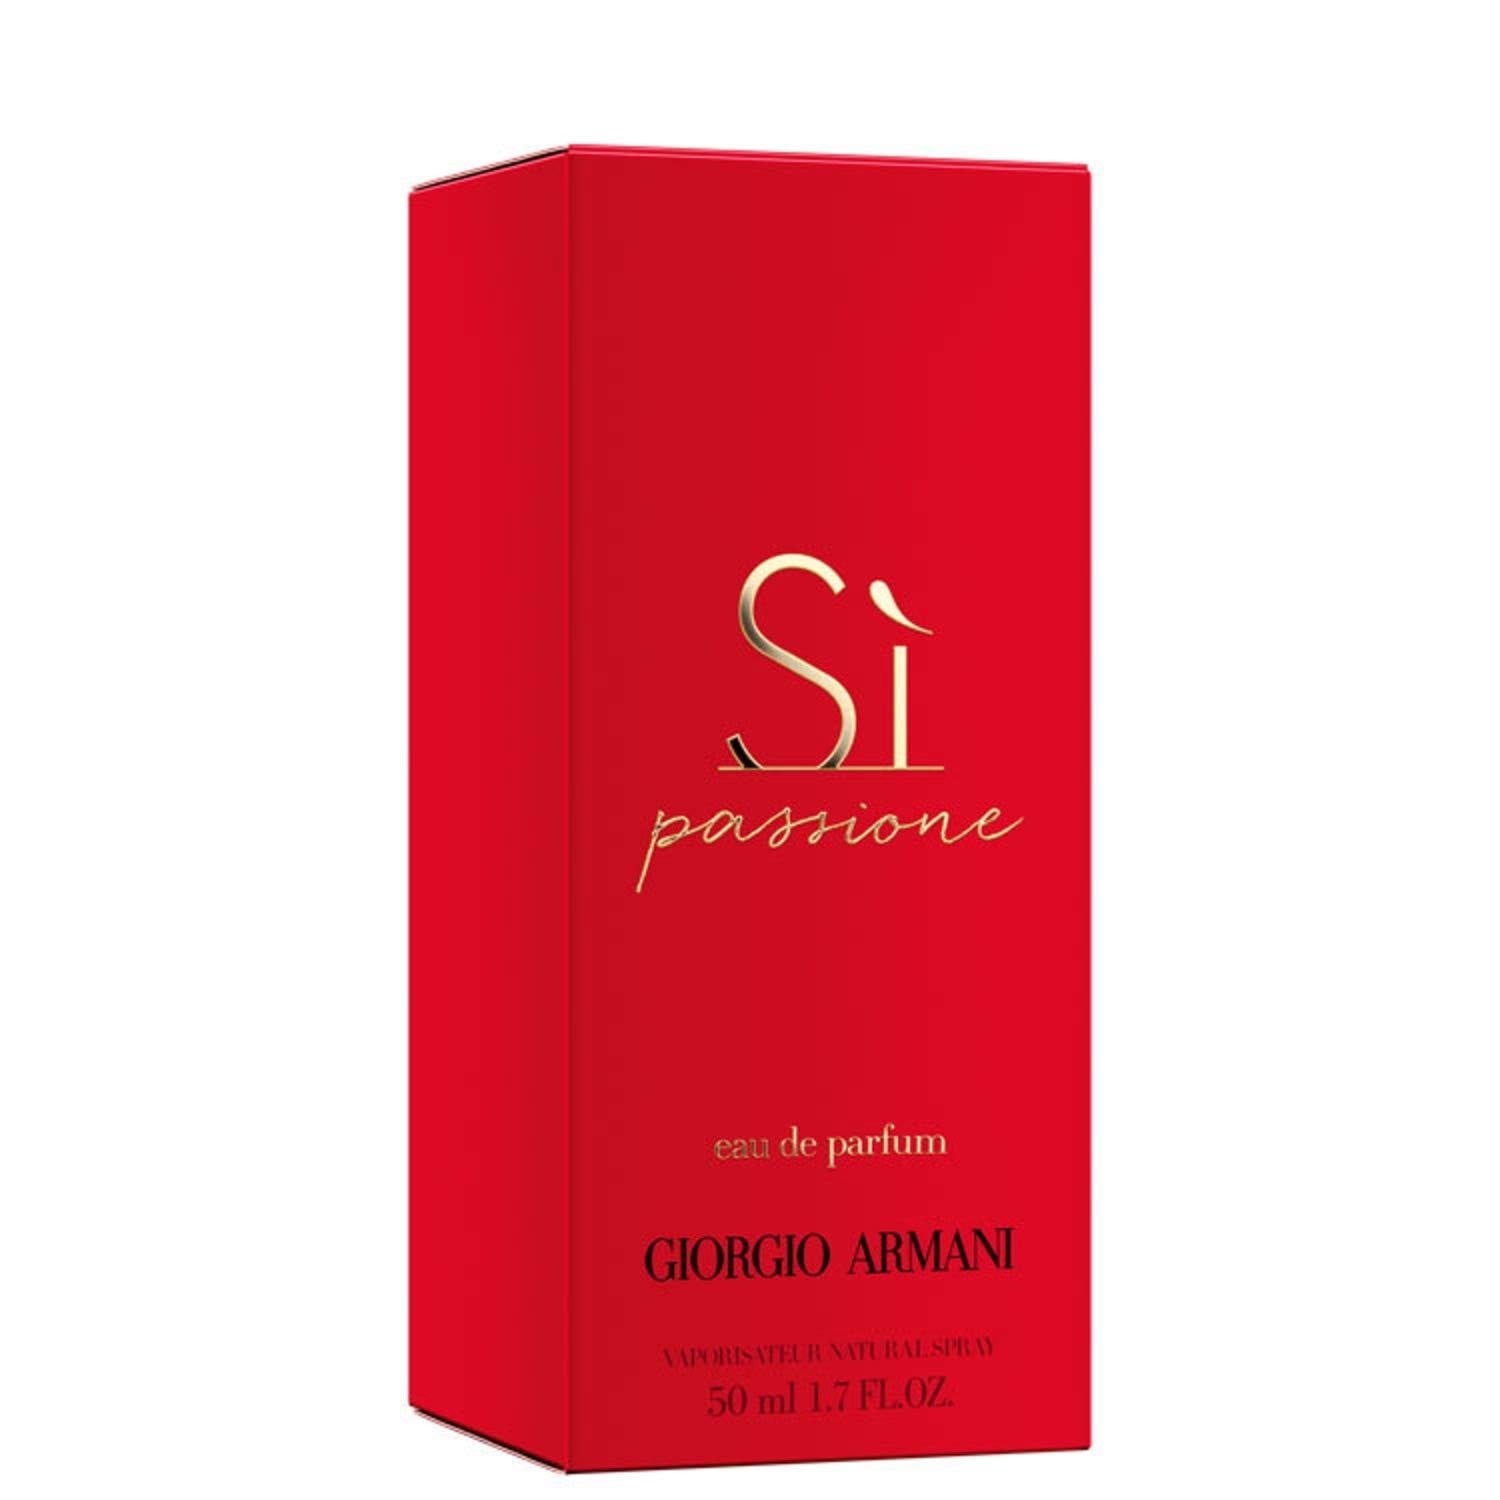 Giorgio Armani Si Passione Eau de Parfum Spray, 1.7-oz